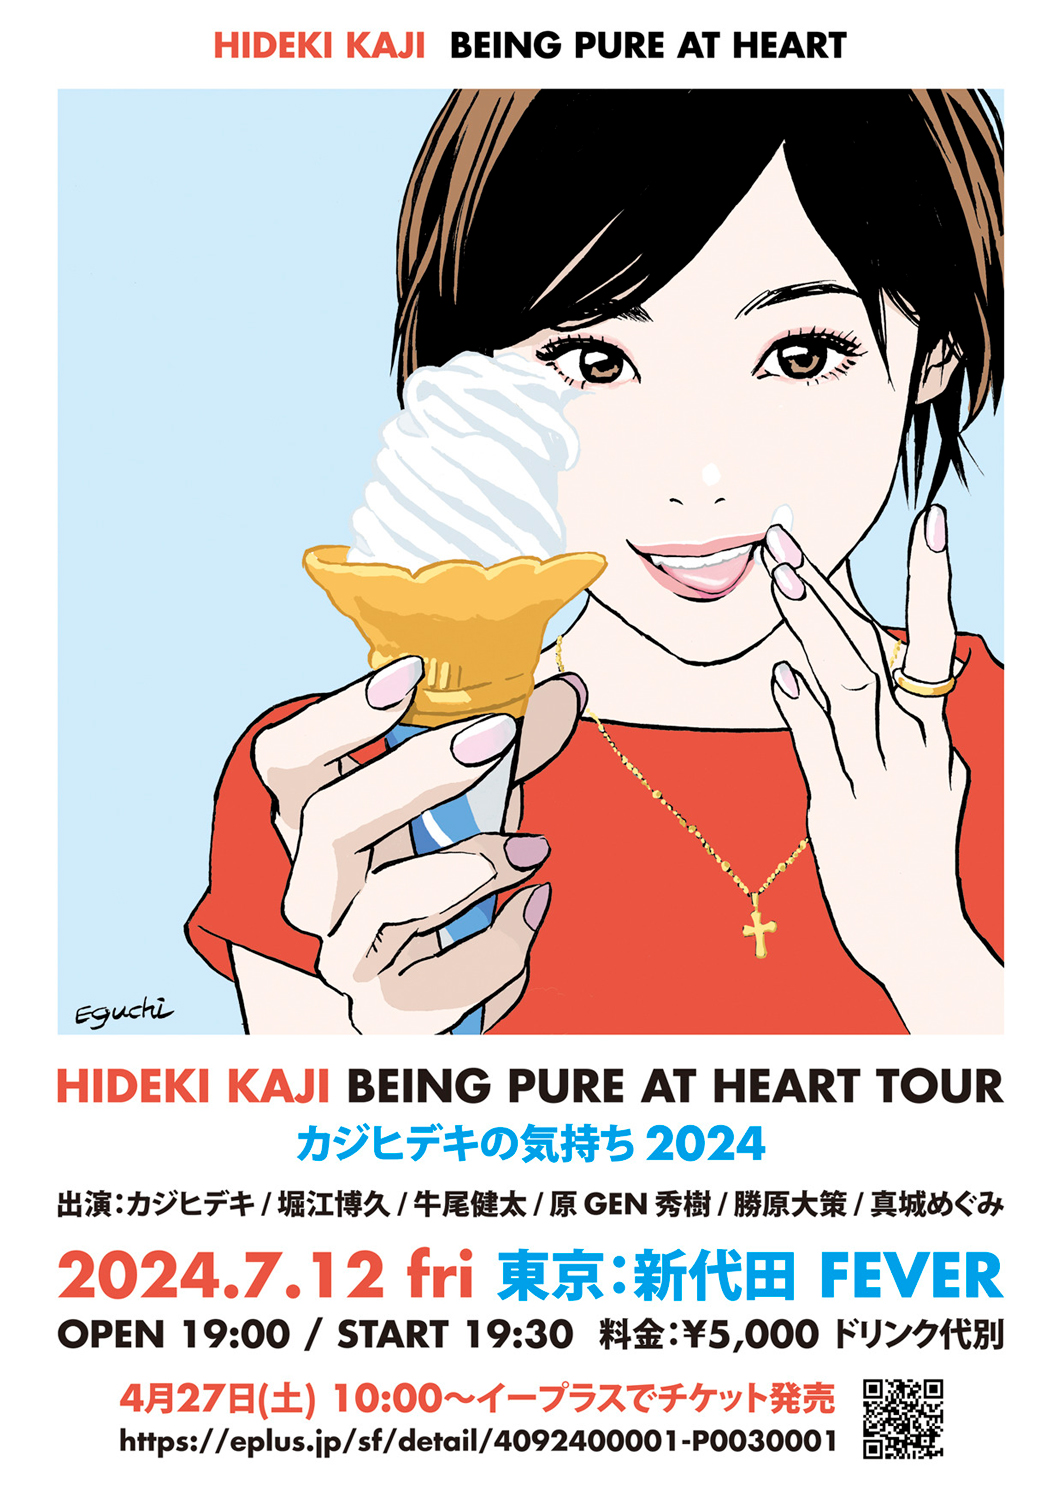 「カジヒデキの気持ち2024 BEING PURE AT HEART TOUR 東京」